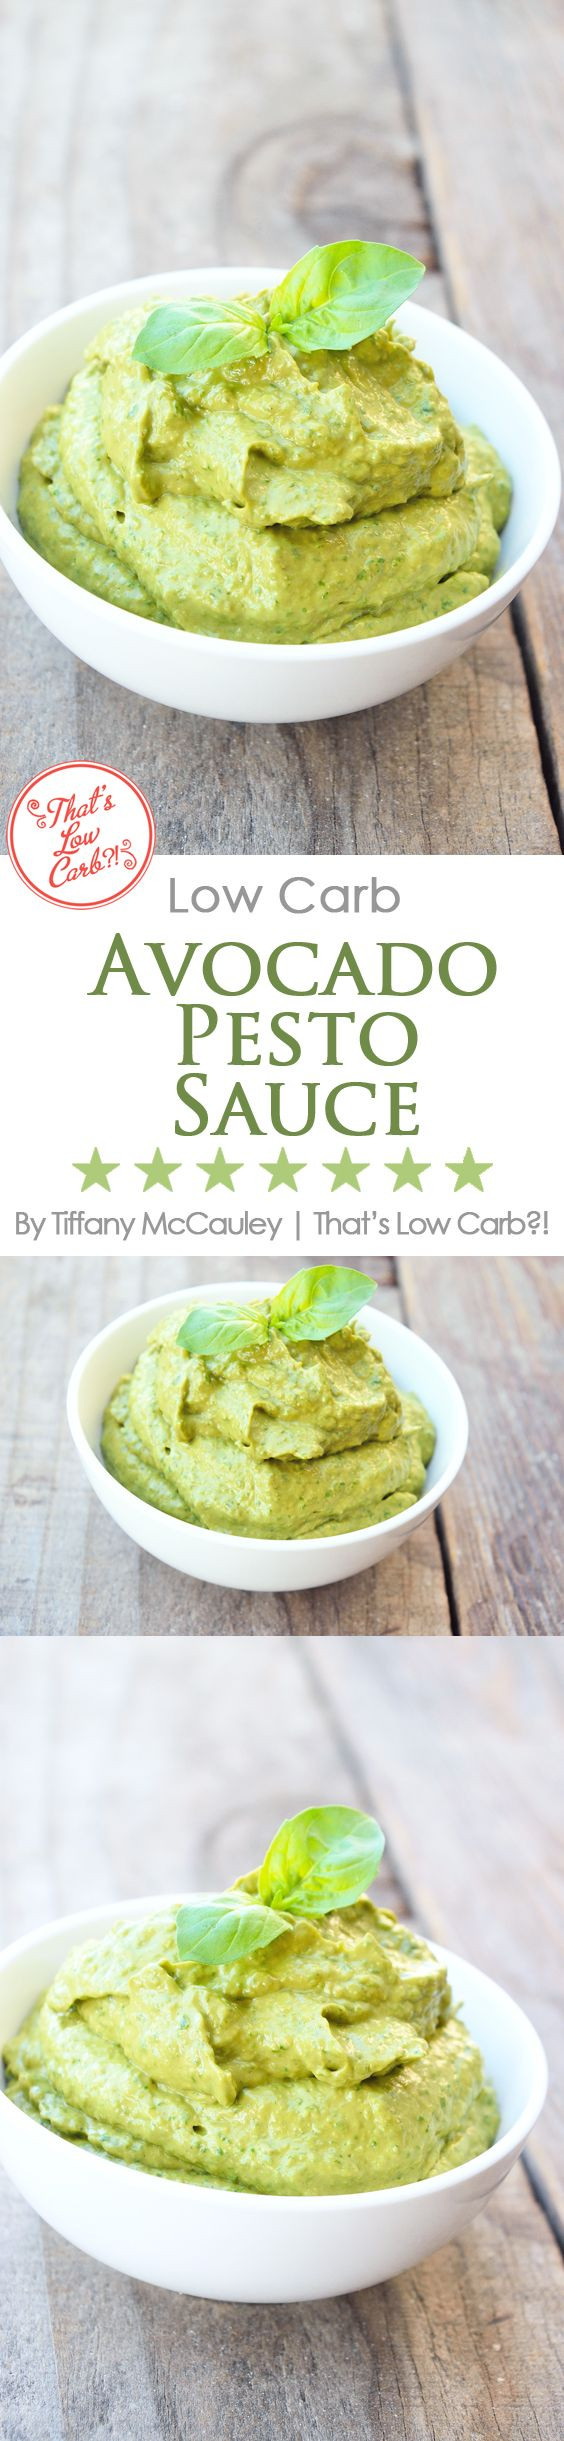 Low Carb Pesto Recipes
 Low Carb Recipes Pesto Sauce Recipe